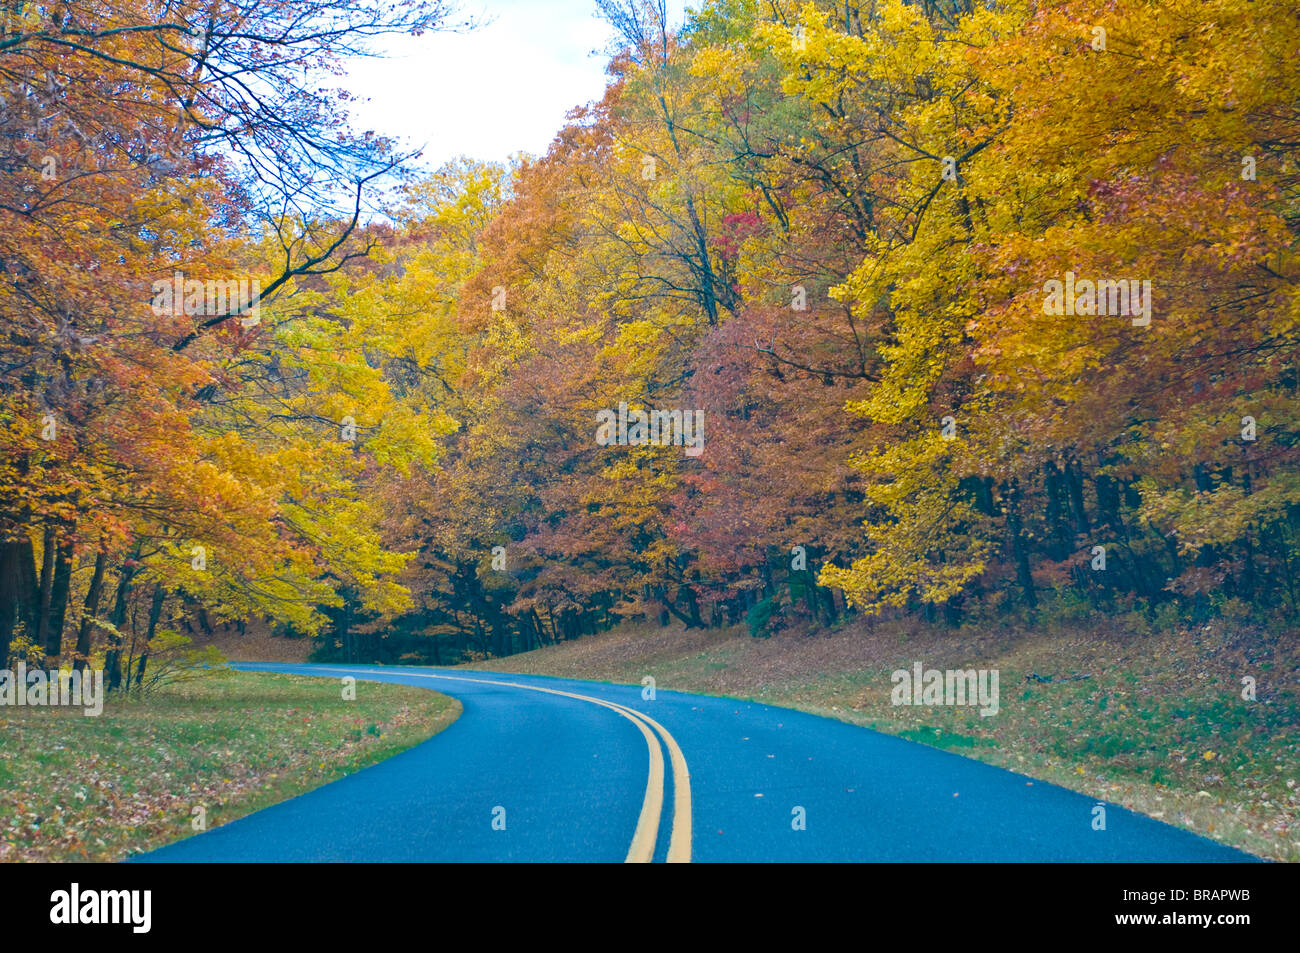 Strada che conduce attraverso gli alberi con foglie colorate in estate indiana, Blue Ridge Mountain Parkway, North Carolina, STATI UNITI D'AMERICA Foto Stock